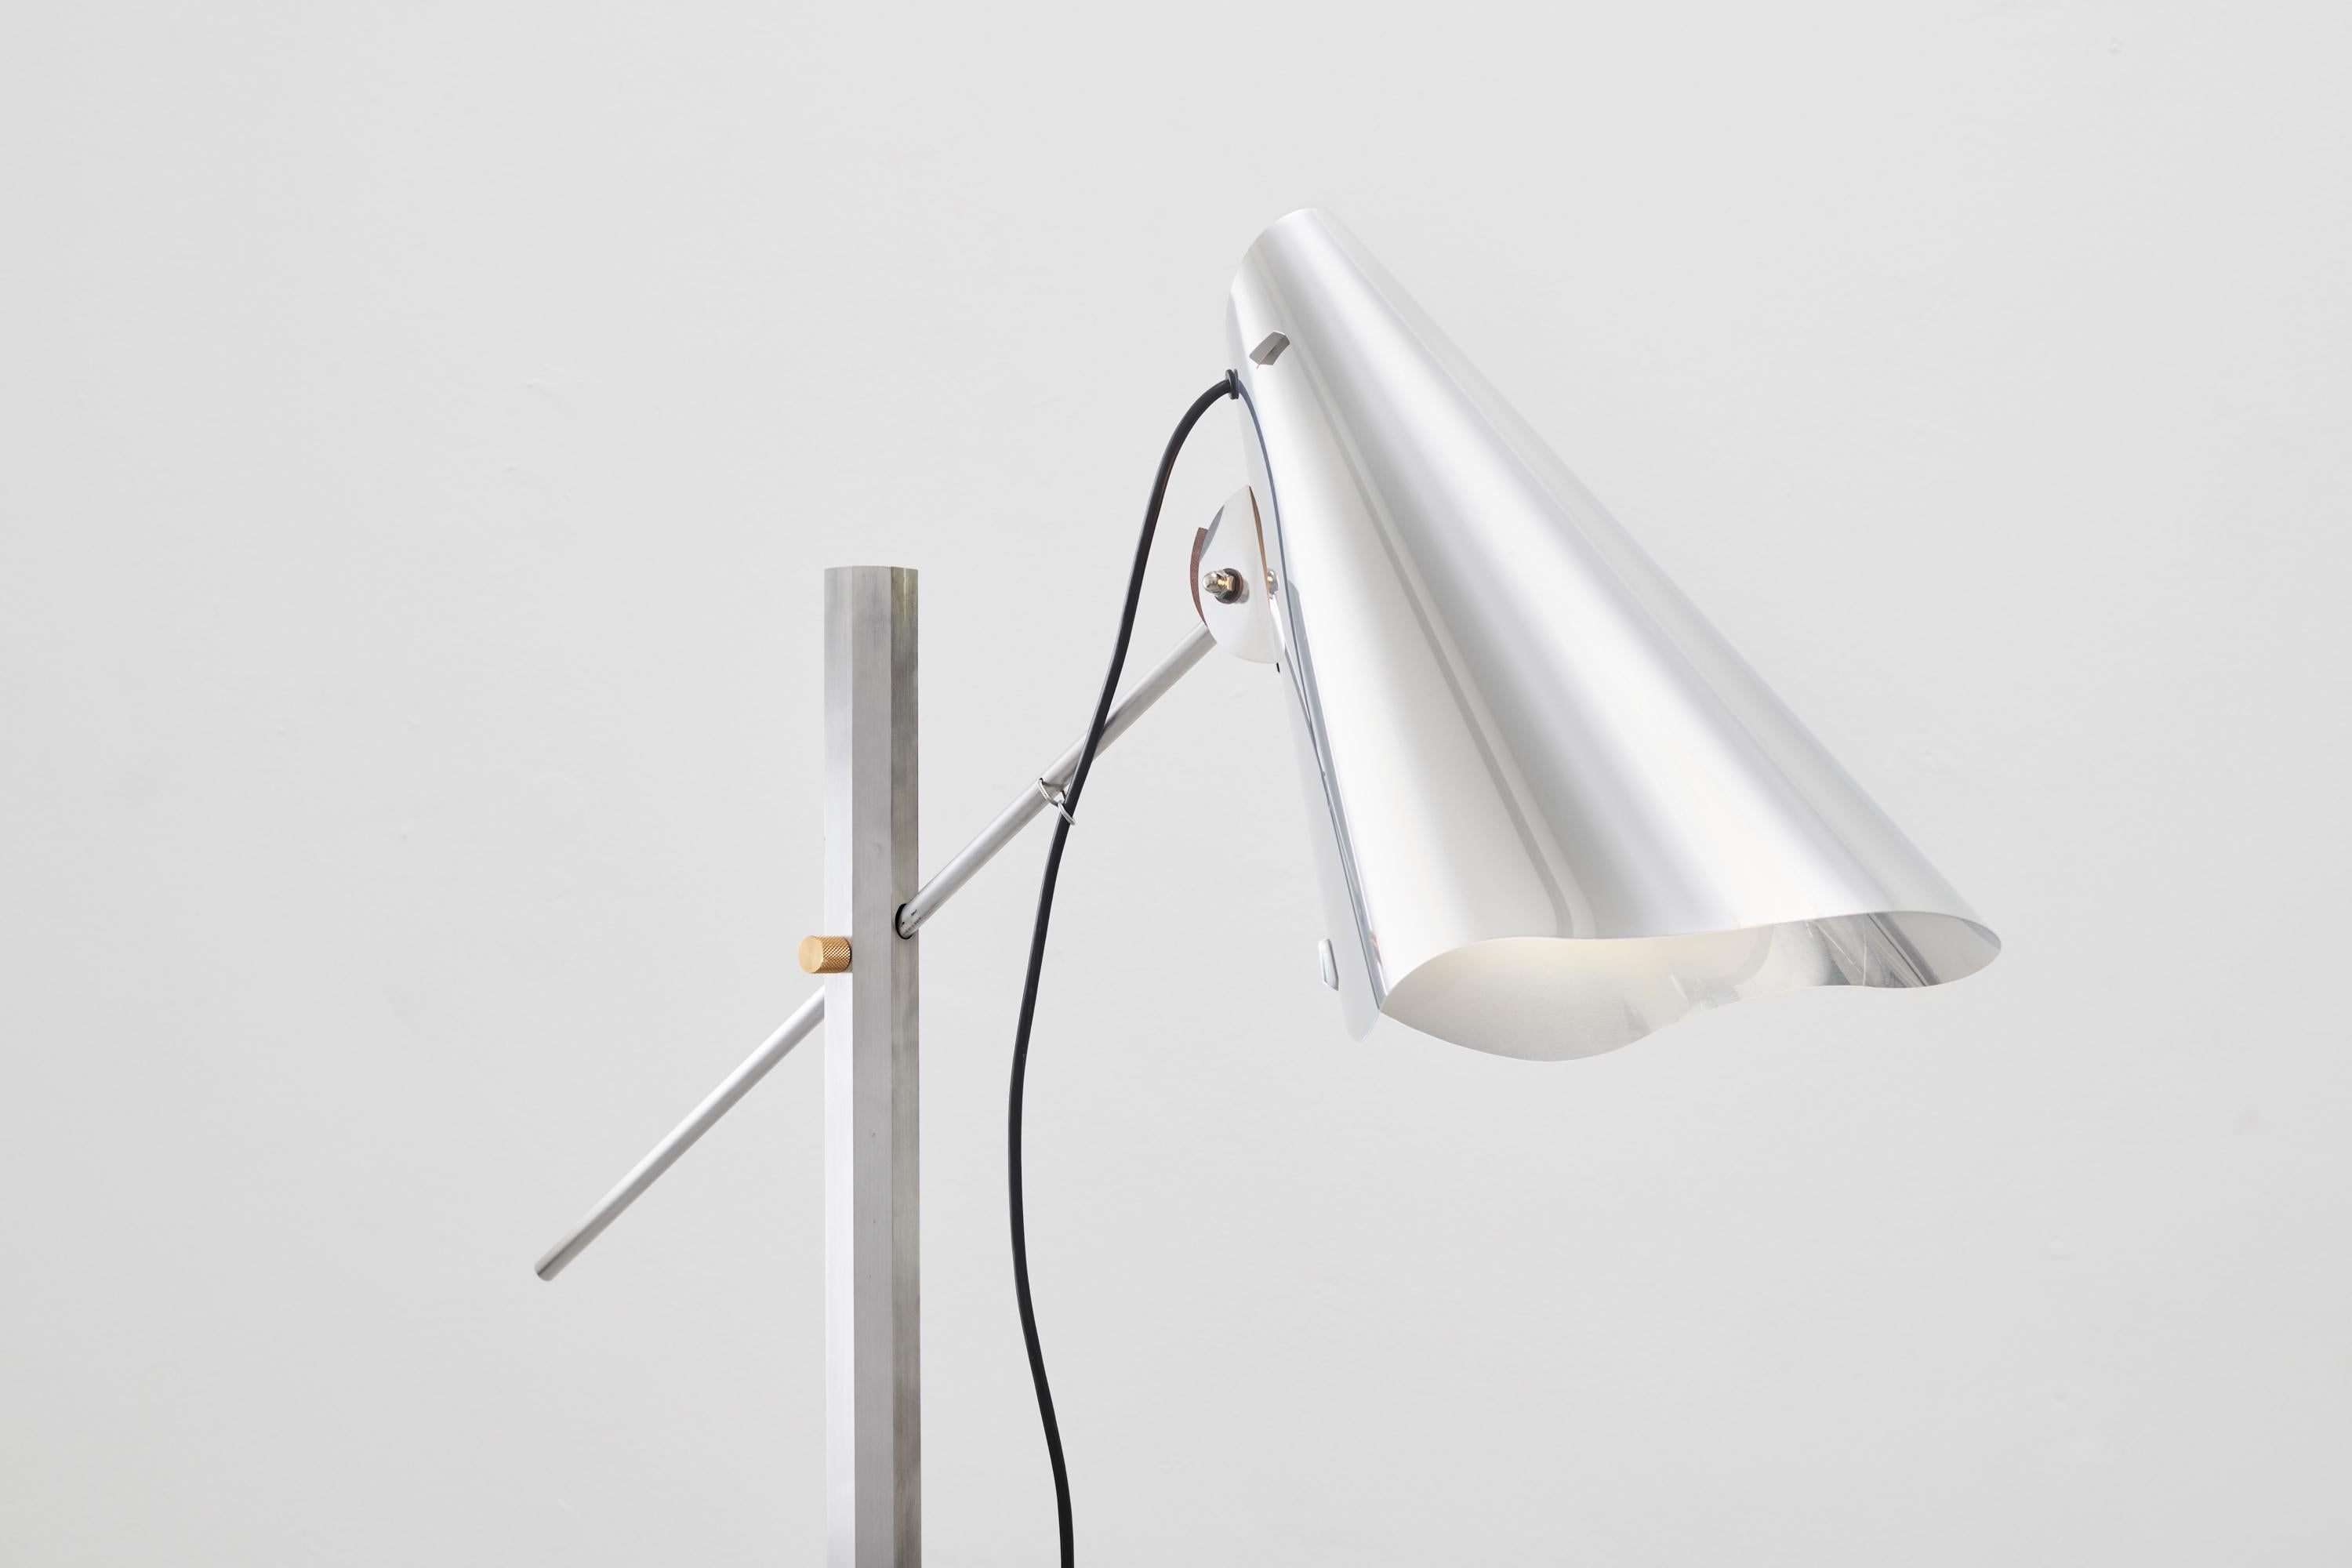 Une nouvelle version du lampadaire original et plus grand de l'artiste danois FOS.
Tige et abat-jour en aluminium avec détails en laiton et base en béton. 
Disponible également en version bois et laiton.
Taille sur mesure disponible
